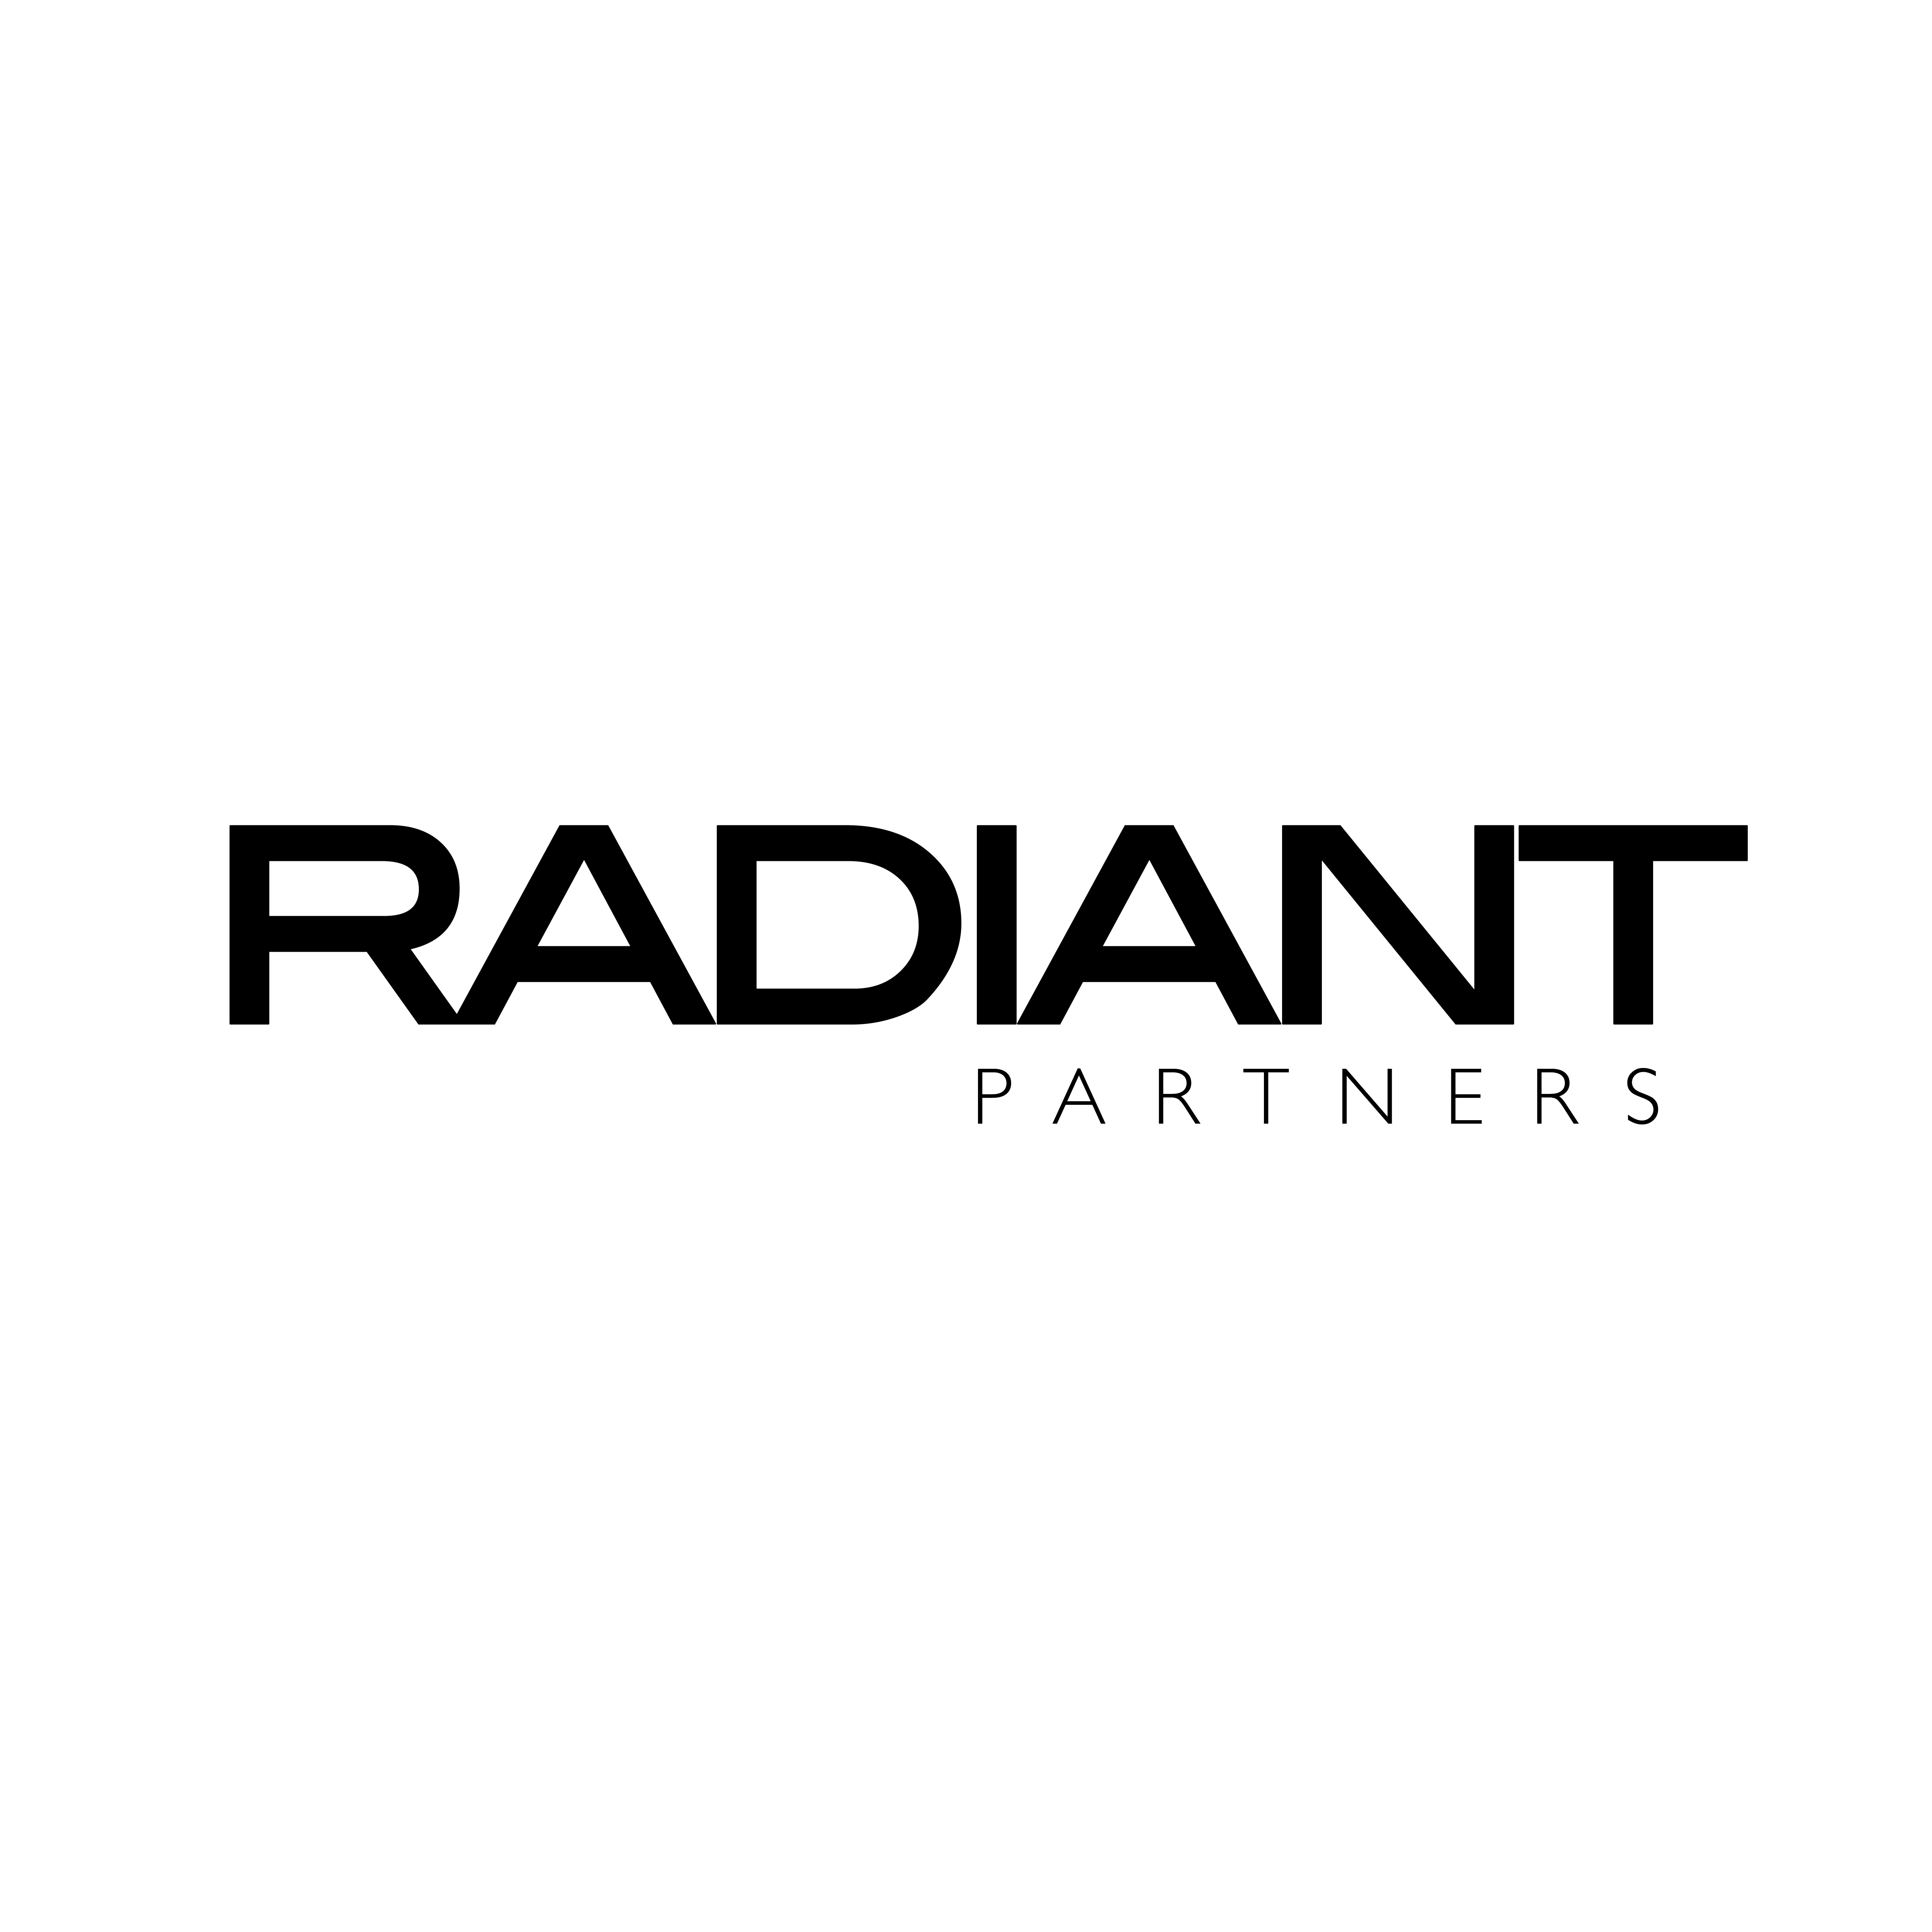 Radiant partners, UAB